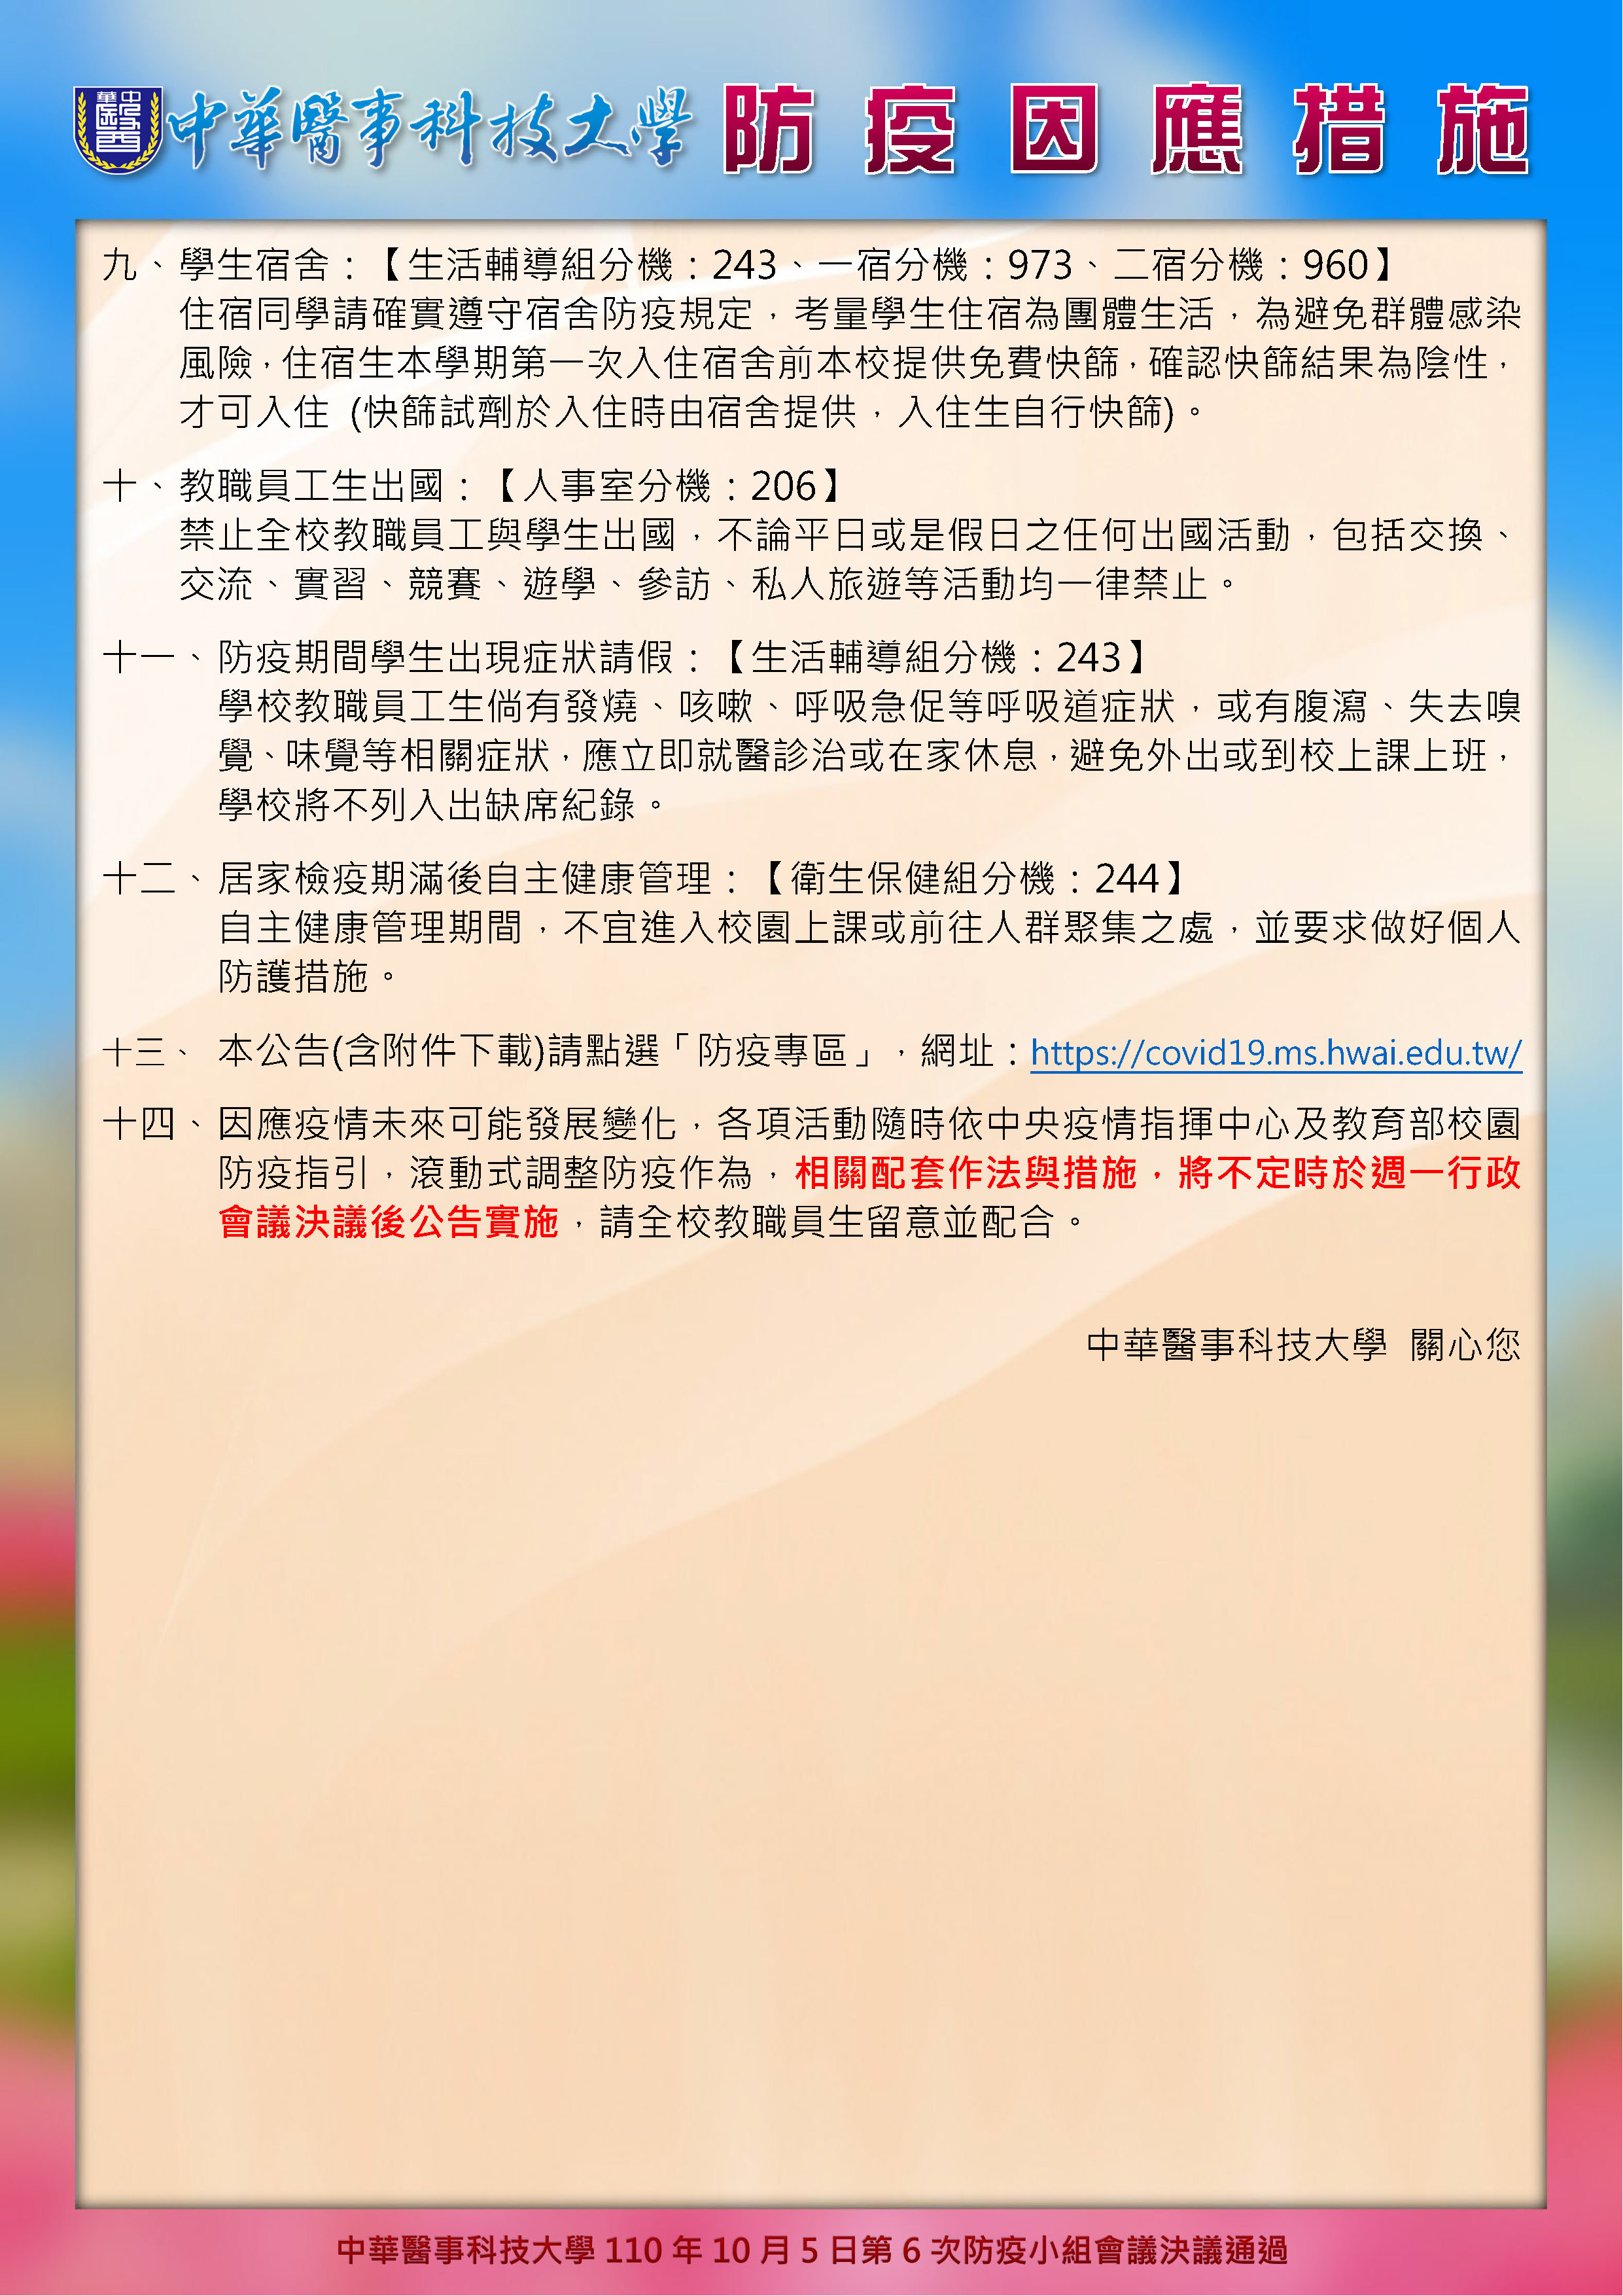 中華醫事科技大學自110年10月6日起防疫因應措施公告 P3